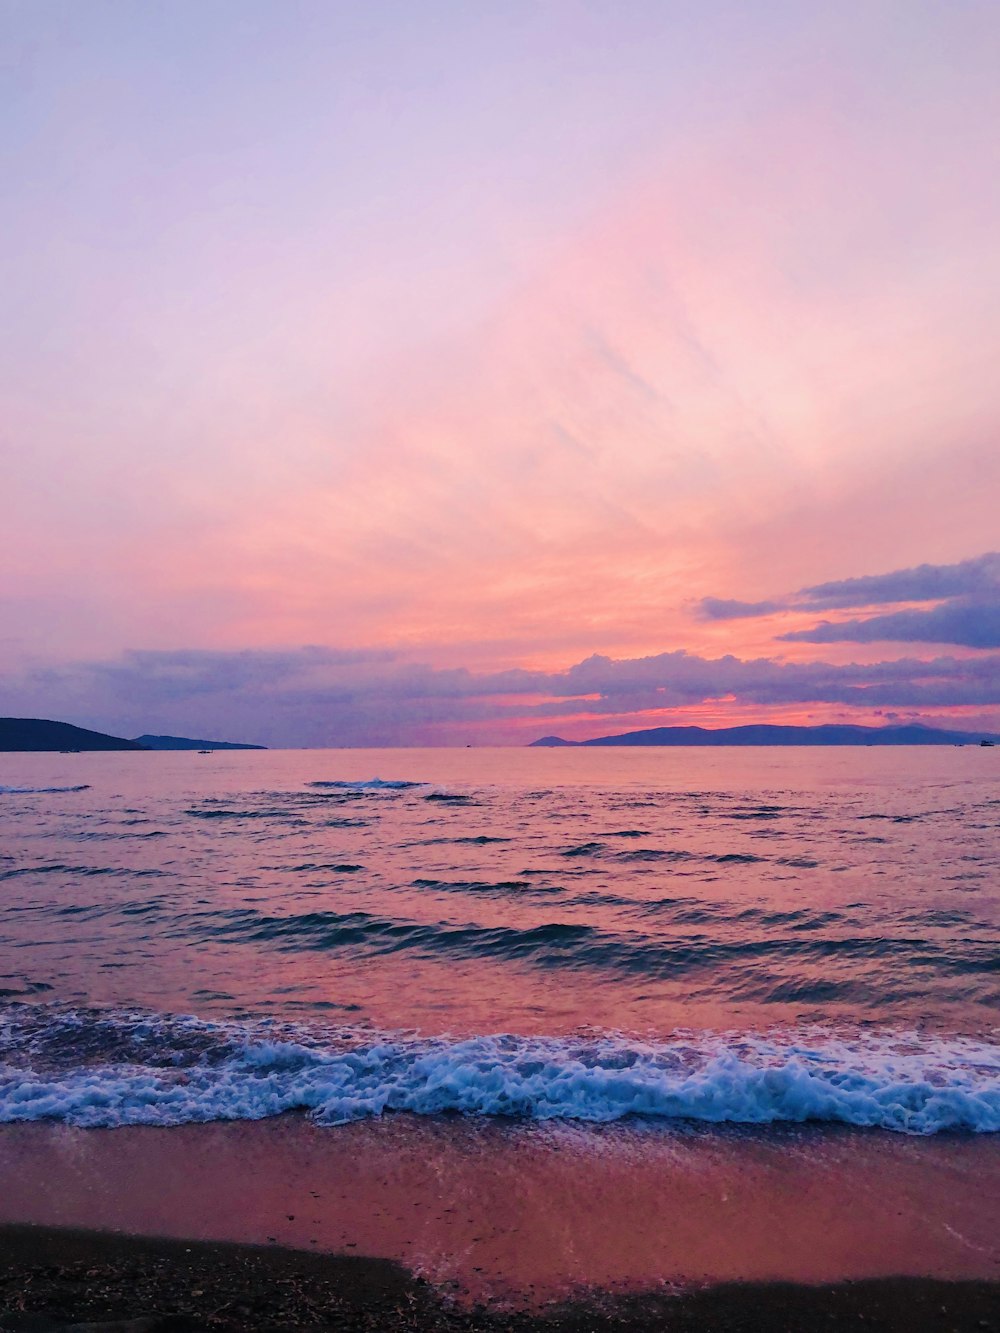 Hãy đắm mình trong một thế giới màu hồng tuyệt đẹp của đại dương hồng. Nơi đây, những con cọp biển đầy màu sắc và những ngọn san hô mềm mại sẽ đưa bạn đến những giấc mơ ngọt ngào.